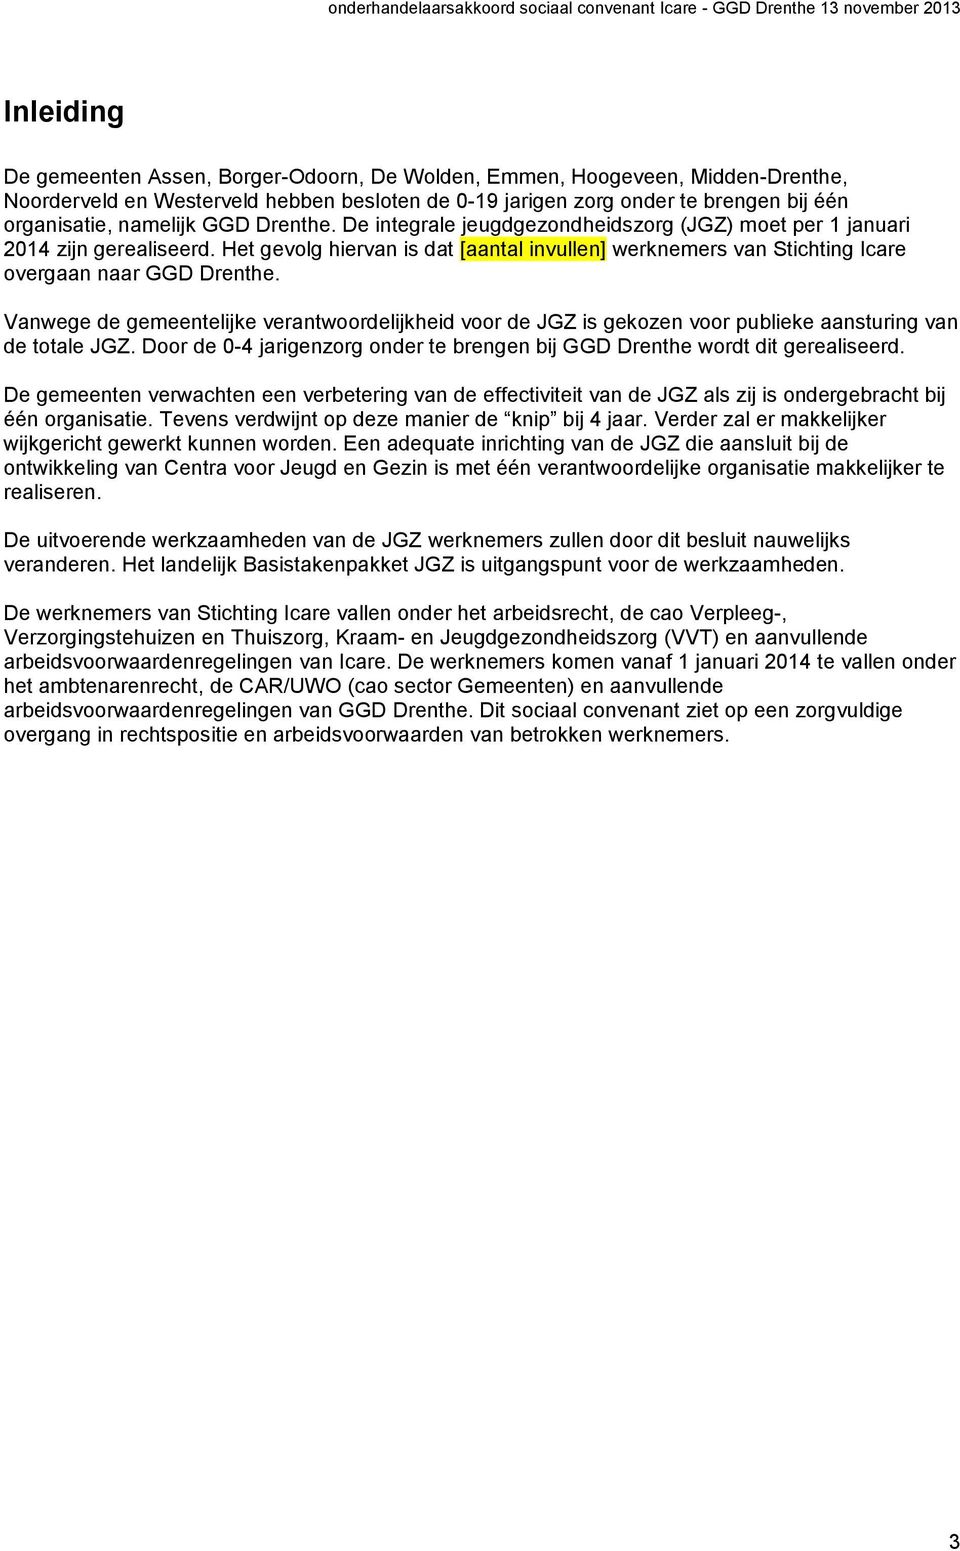 Vanwege de gemeentelijke verantwoordelijkheid voor de JGZ is gekozen voor publieke aansturing van de totale JGZ. Door de 0-4 jarigenzorg onder te brengen bij GGD Drenthe wordt dit gerealiseerd.